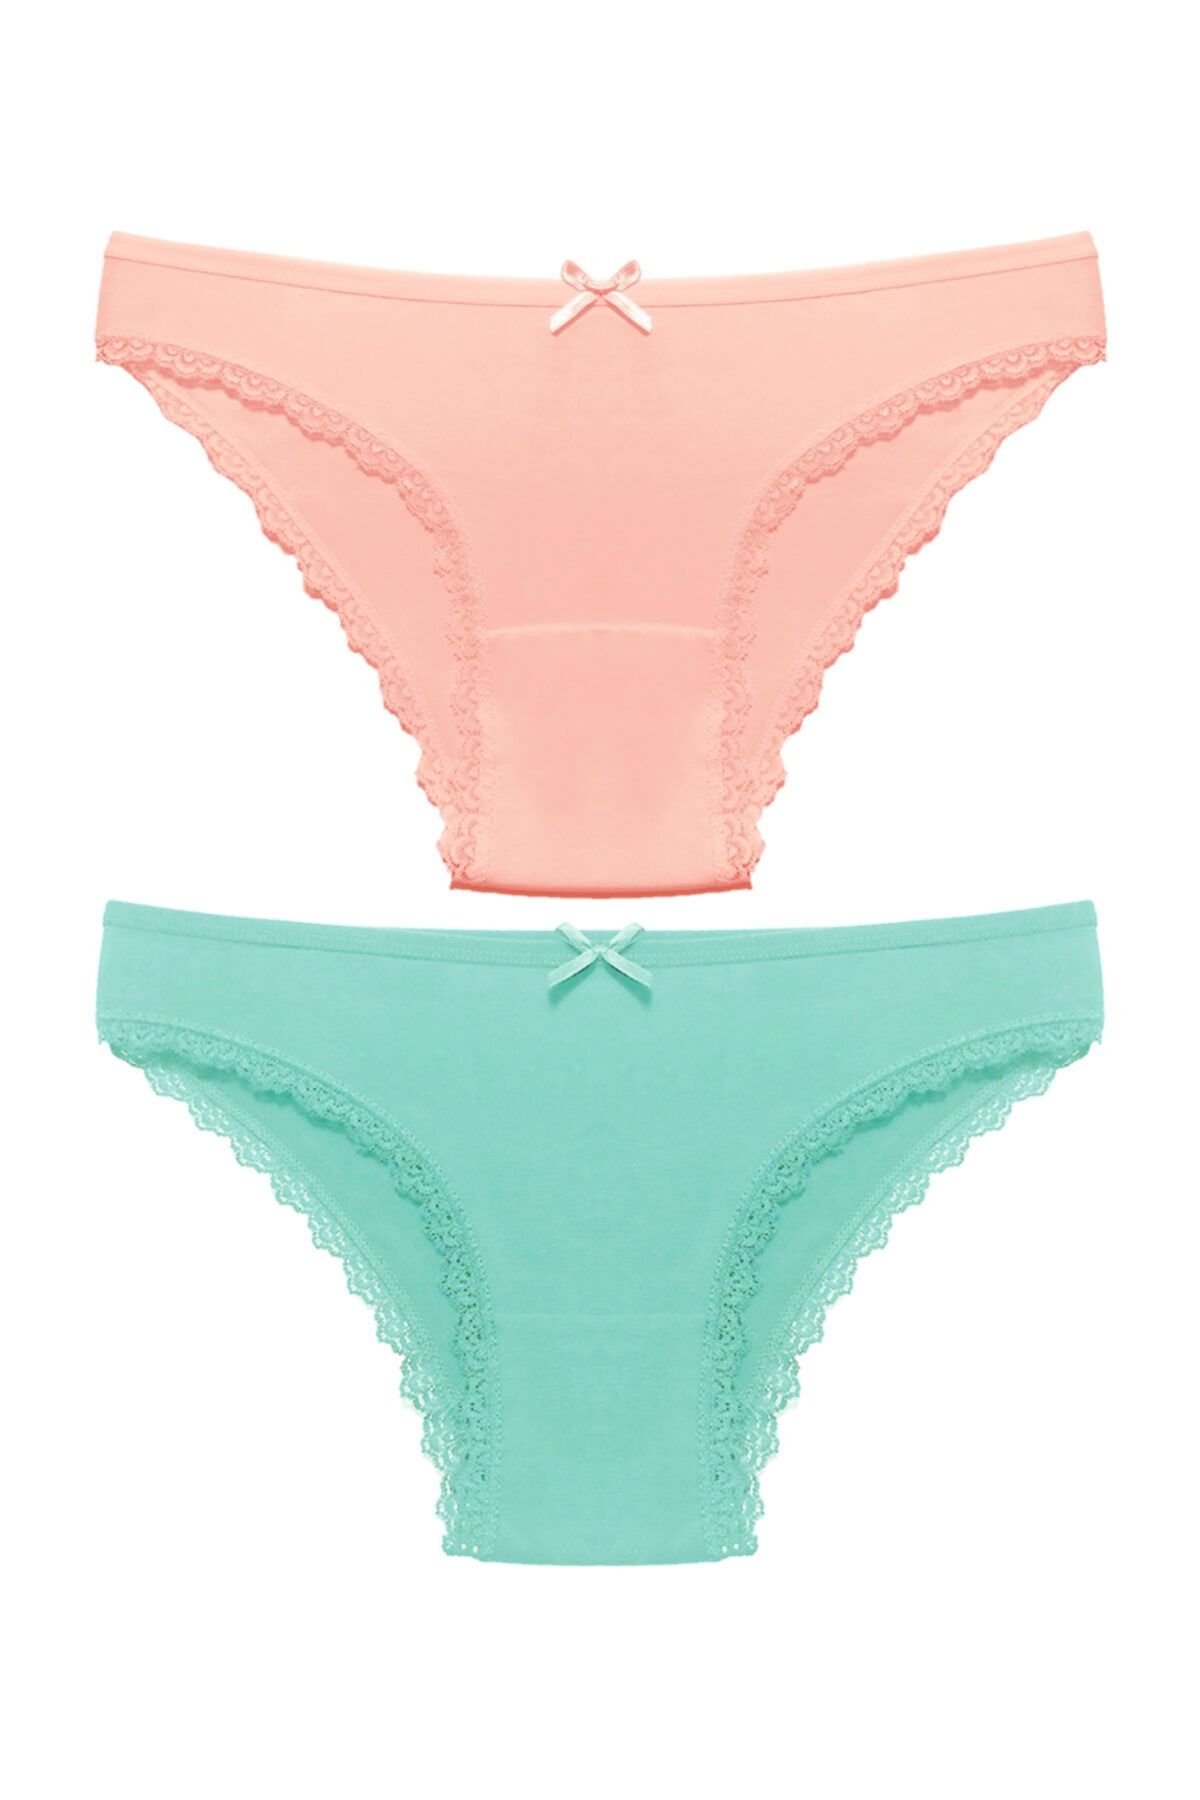 Liona 2 Li Paket Düz Renk Kenarları Dantelli M Beden Kadın Bikini Külot